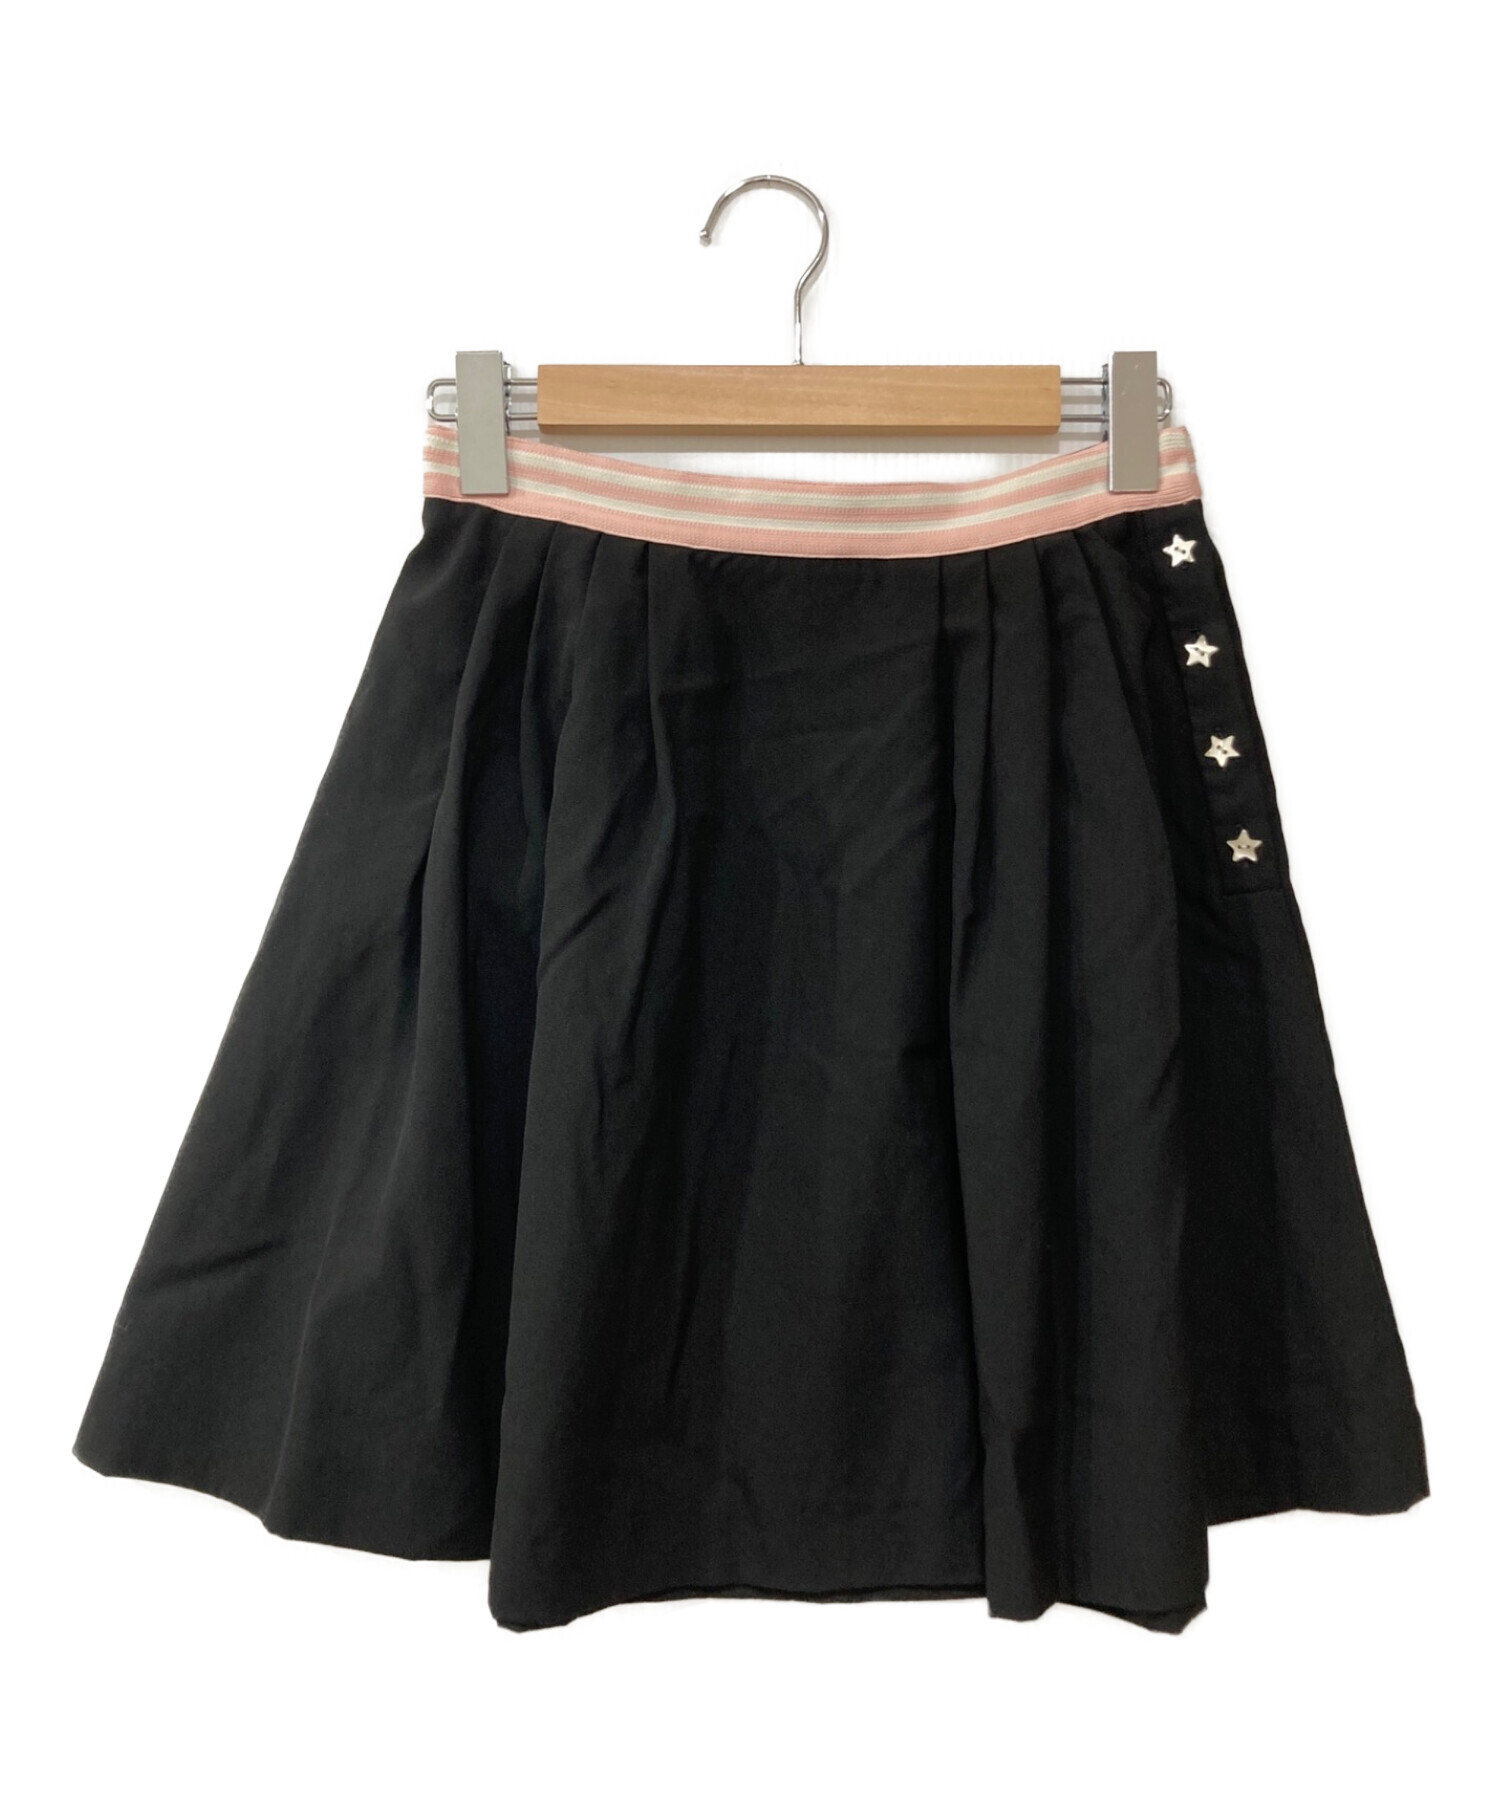 ミュウミュウ  スカート  黒スカート丈50cm